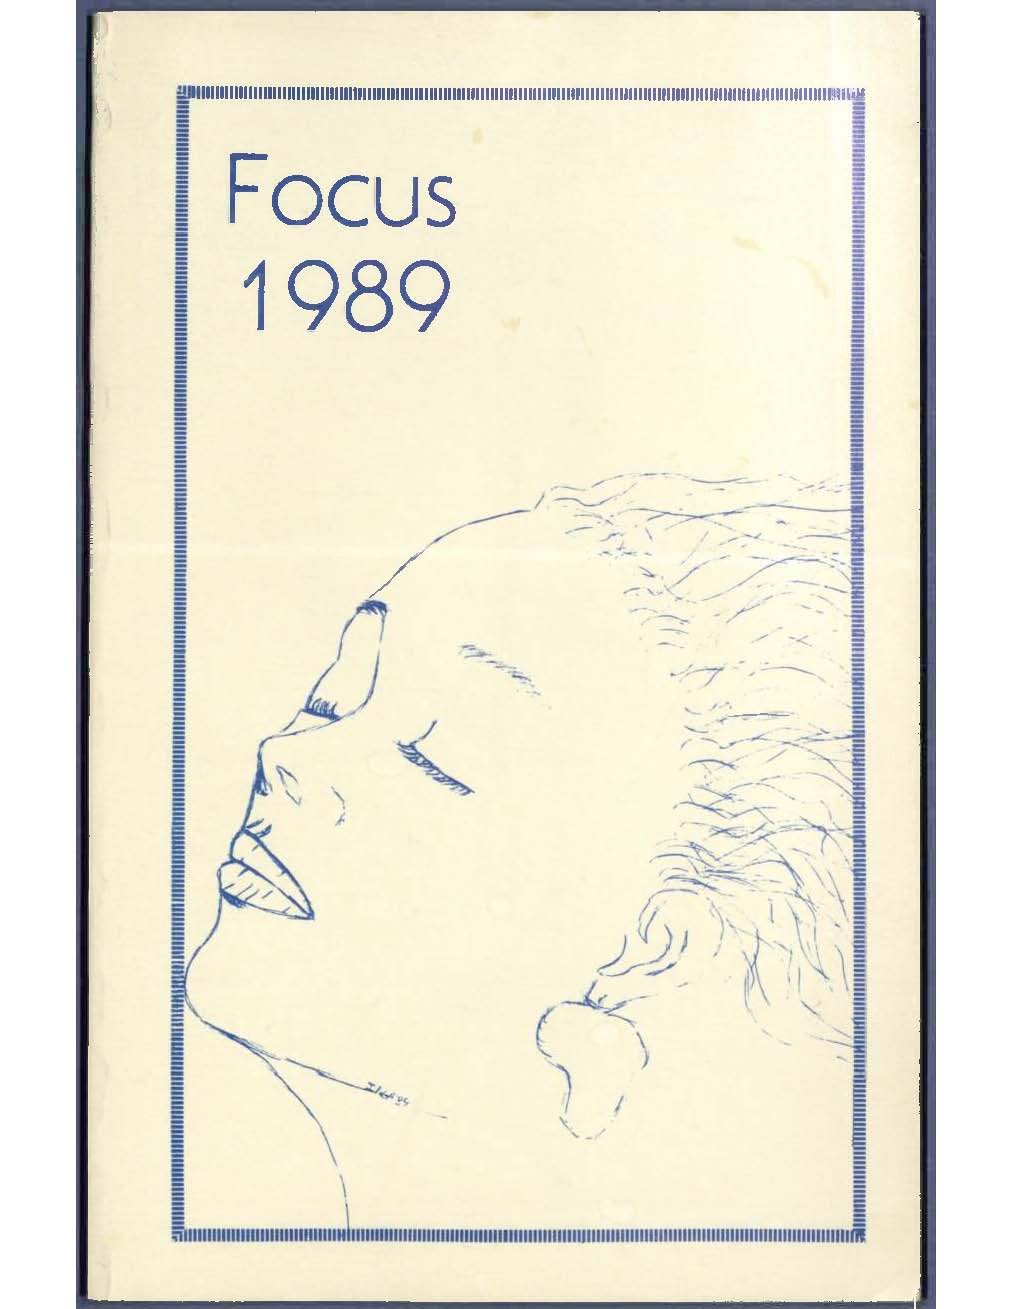 Focus 1989 cover image